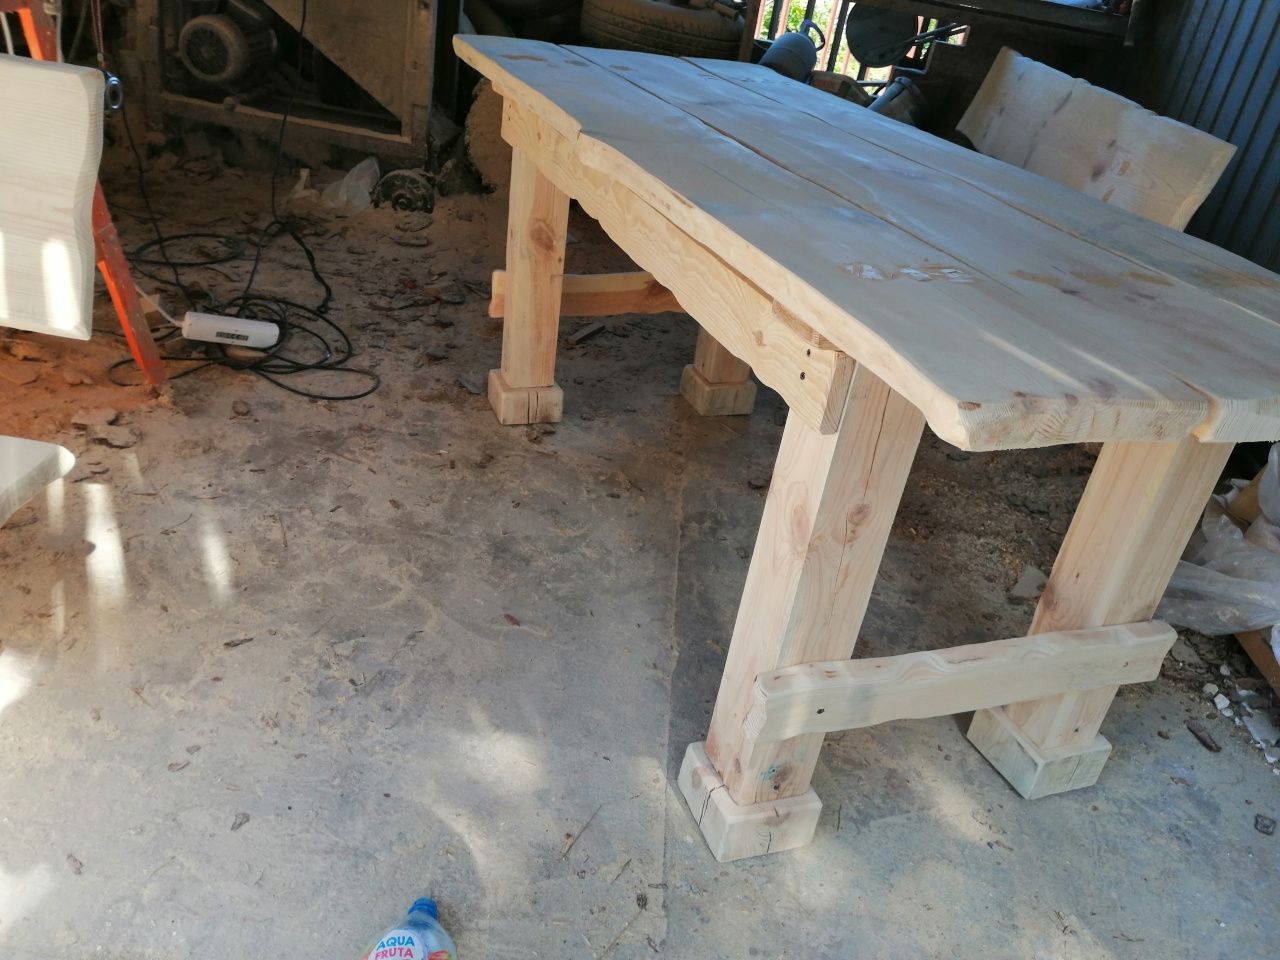 stół drewniany ogrodowy ciężki masywny